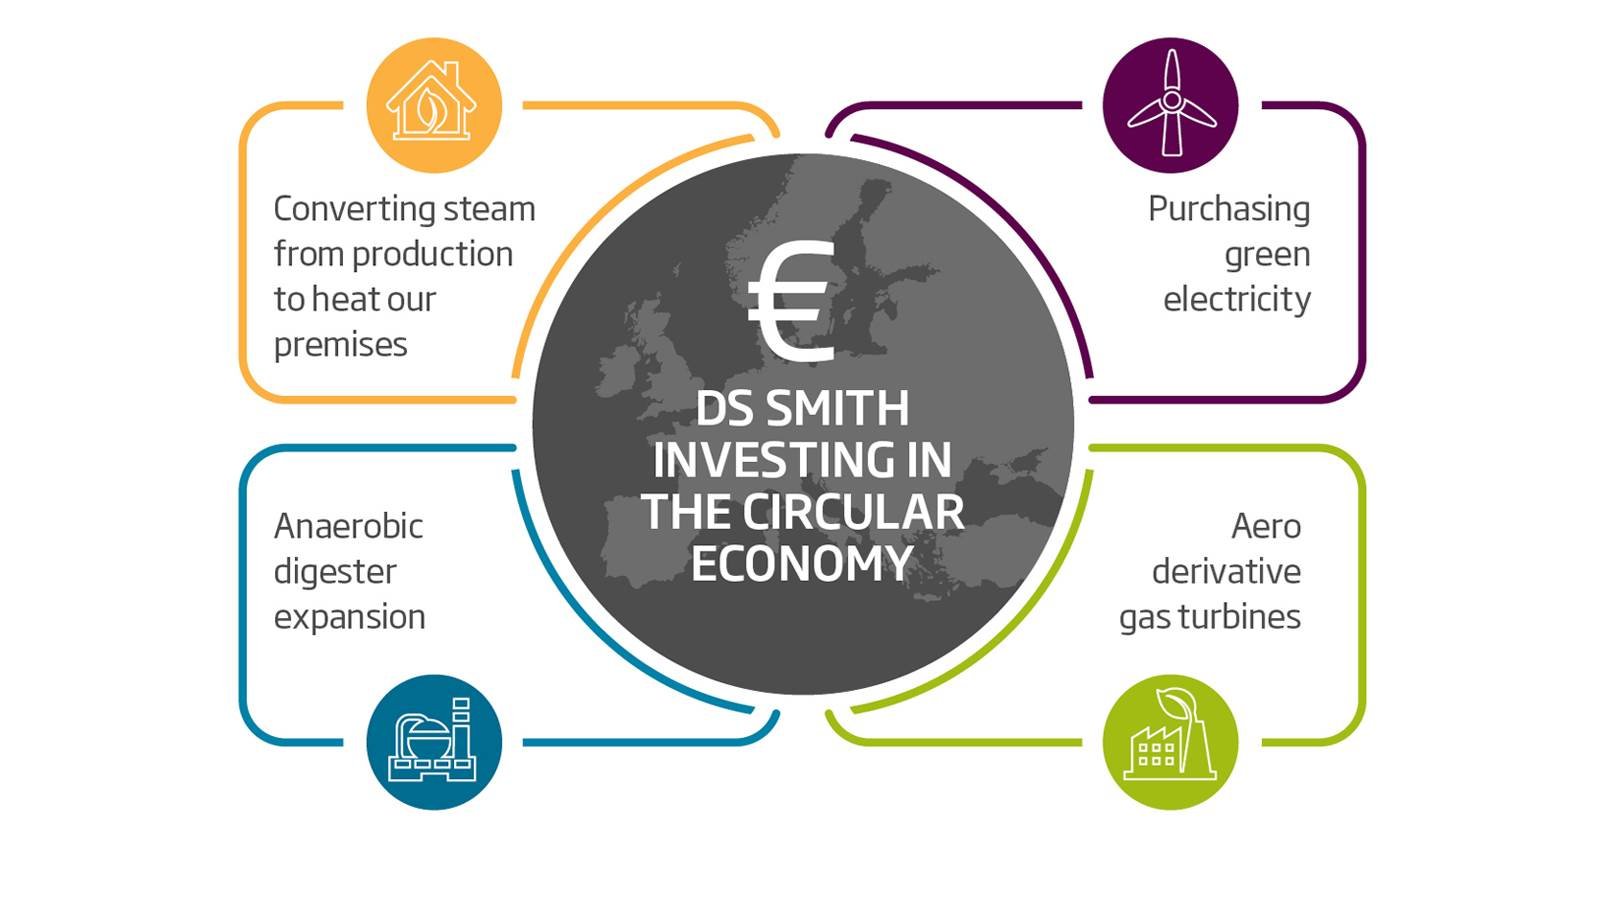 Em toda a Europa, estamos a investir estrategicamente em eletricidade verde, energias renováveis e eficiência energética